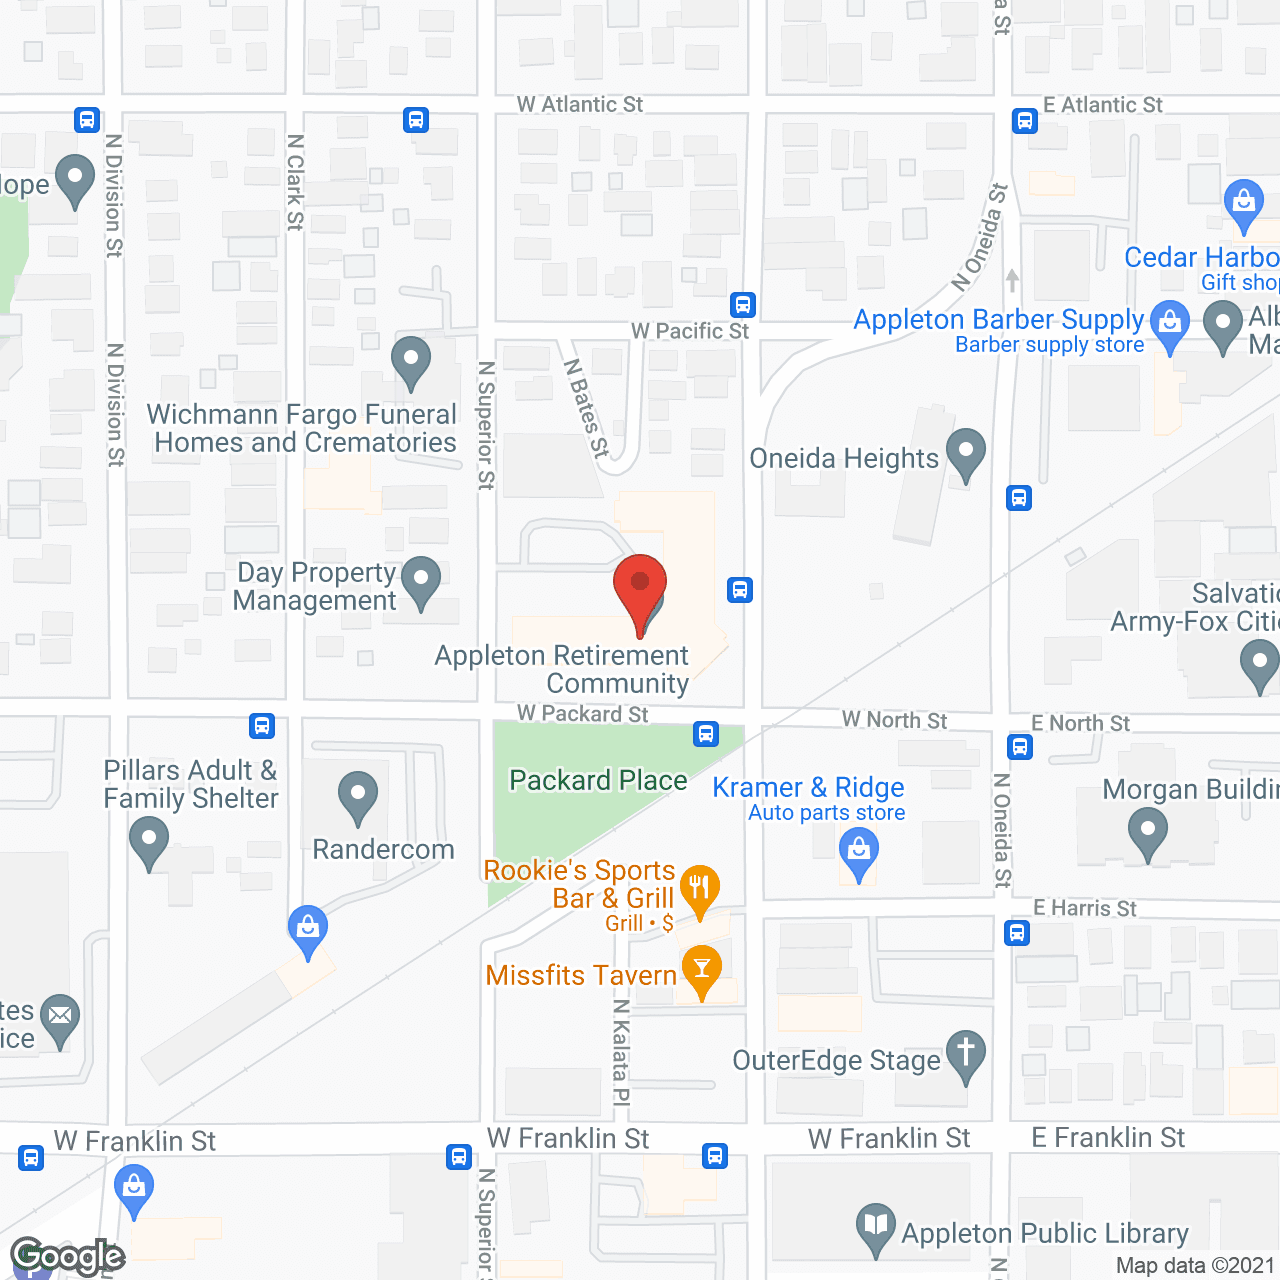 Appleton Retirement Community in google map